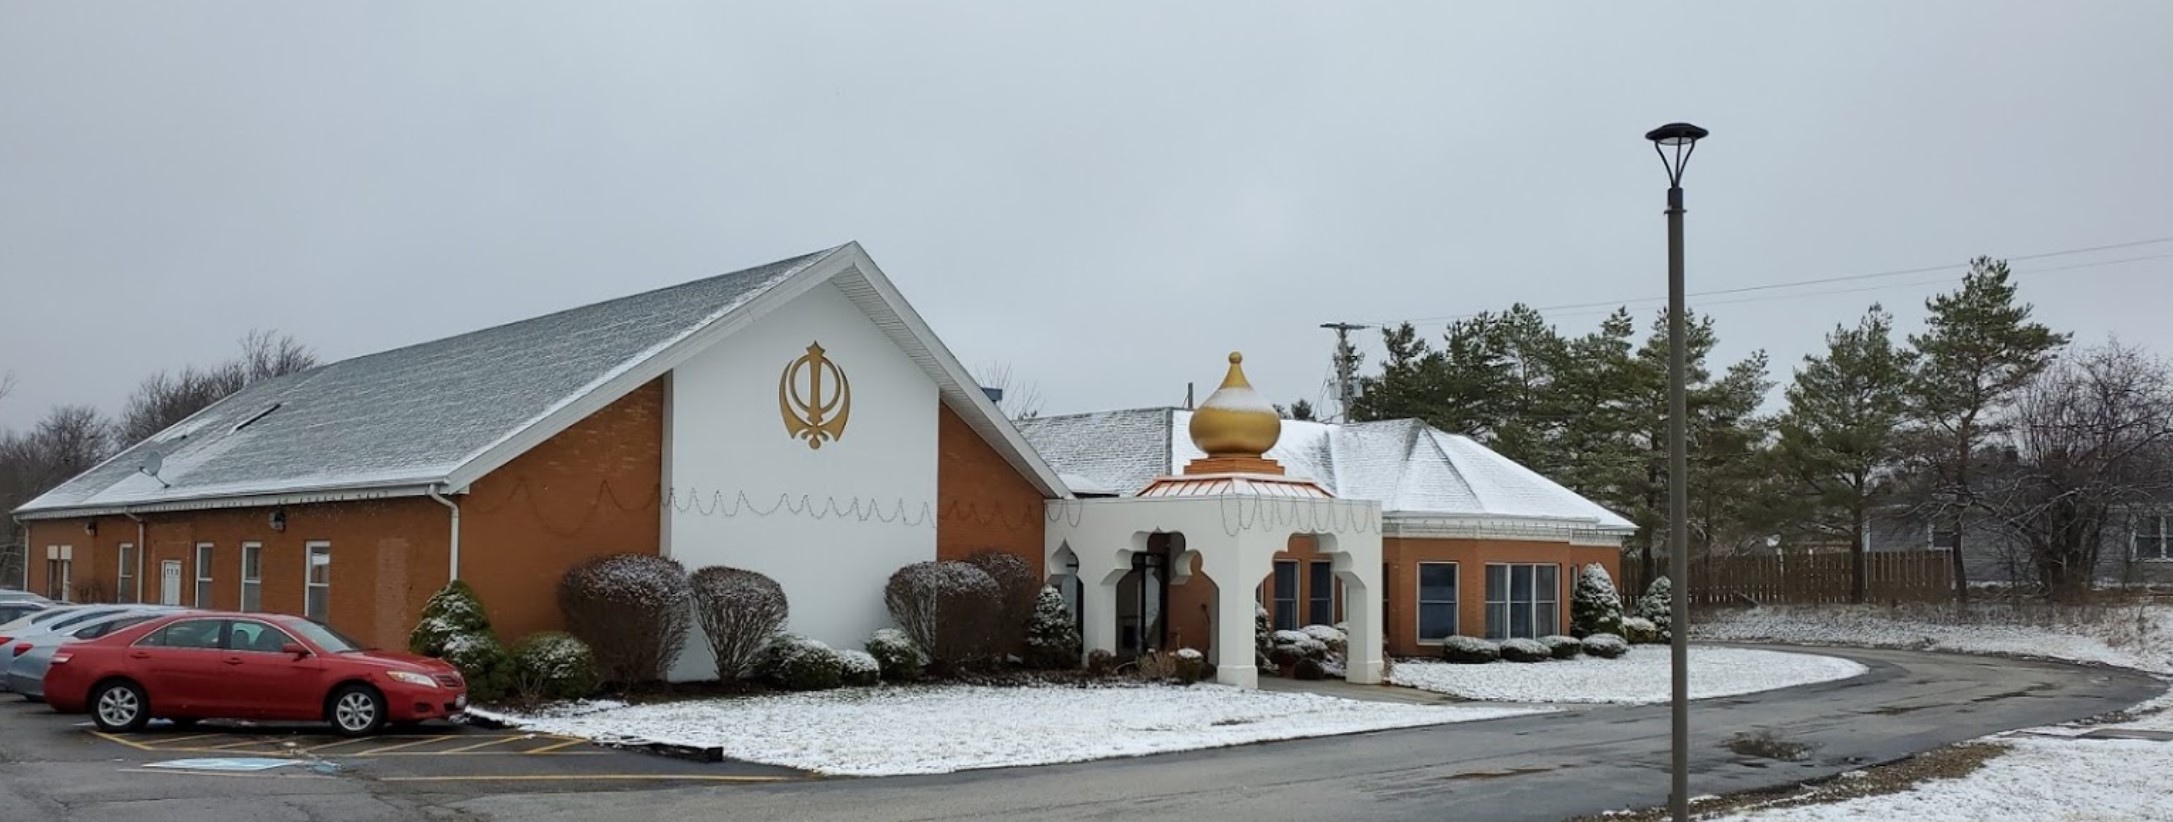 Gurdwara Guru Nanak Foundation – Cleveland